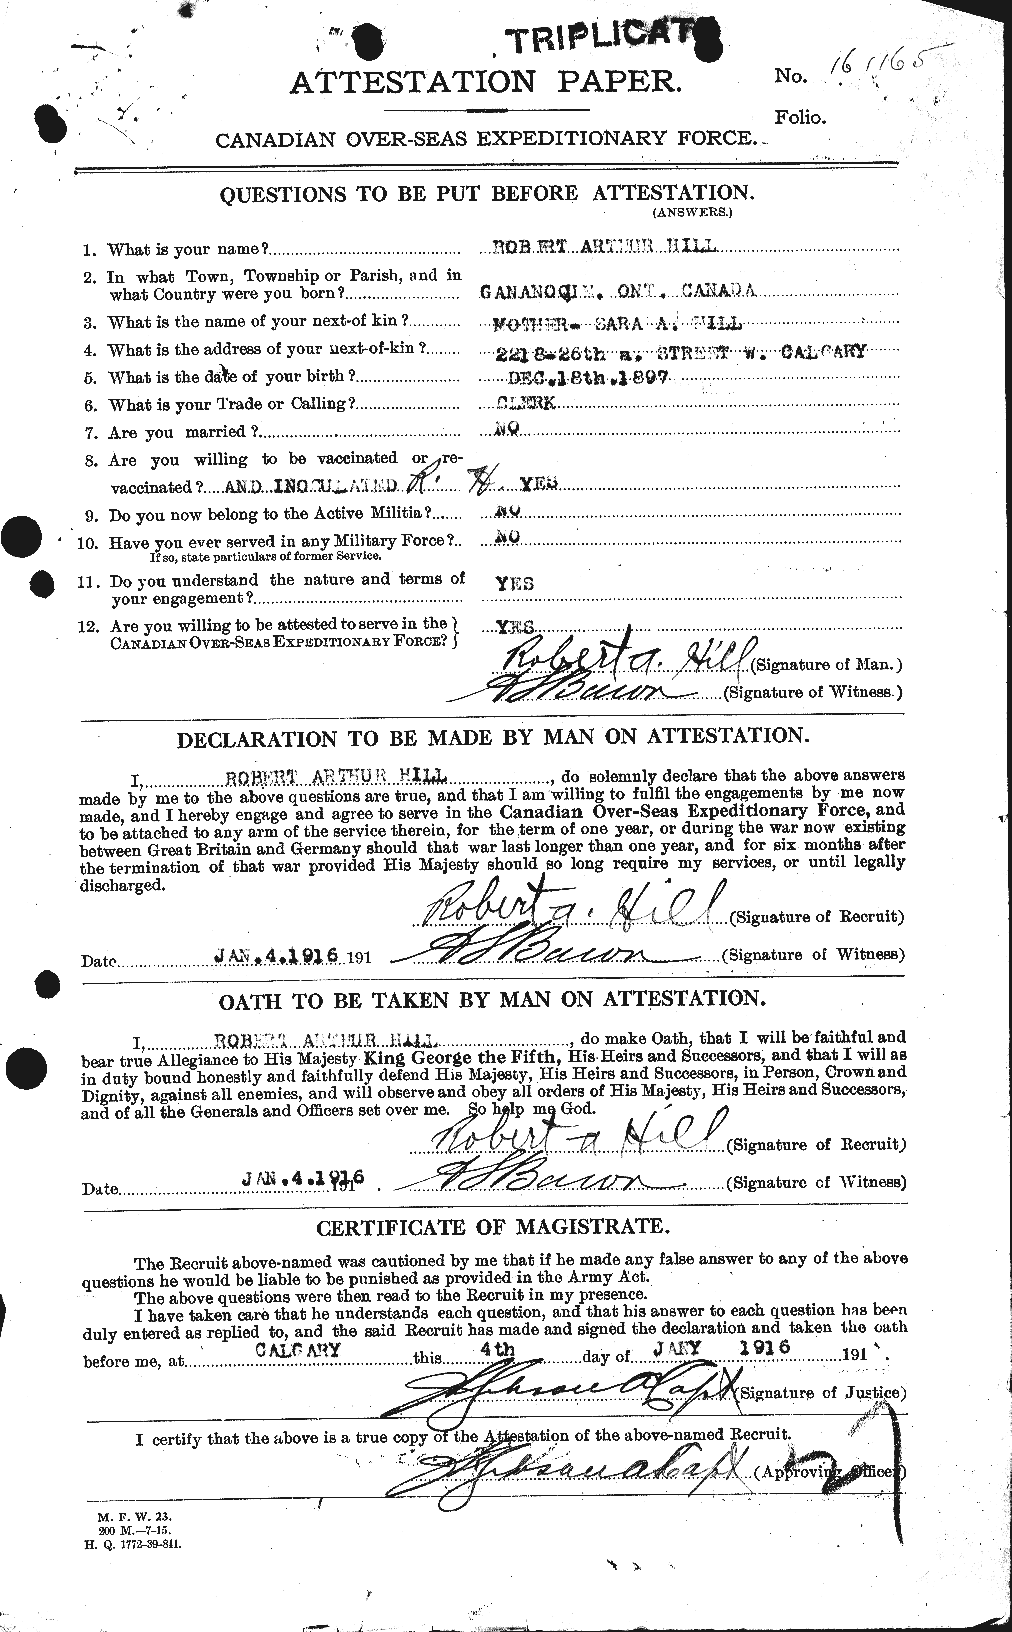 Dossiers du Personnel de la Première Guerre mondiale - CEC 404377a